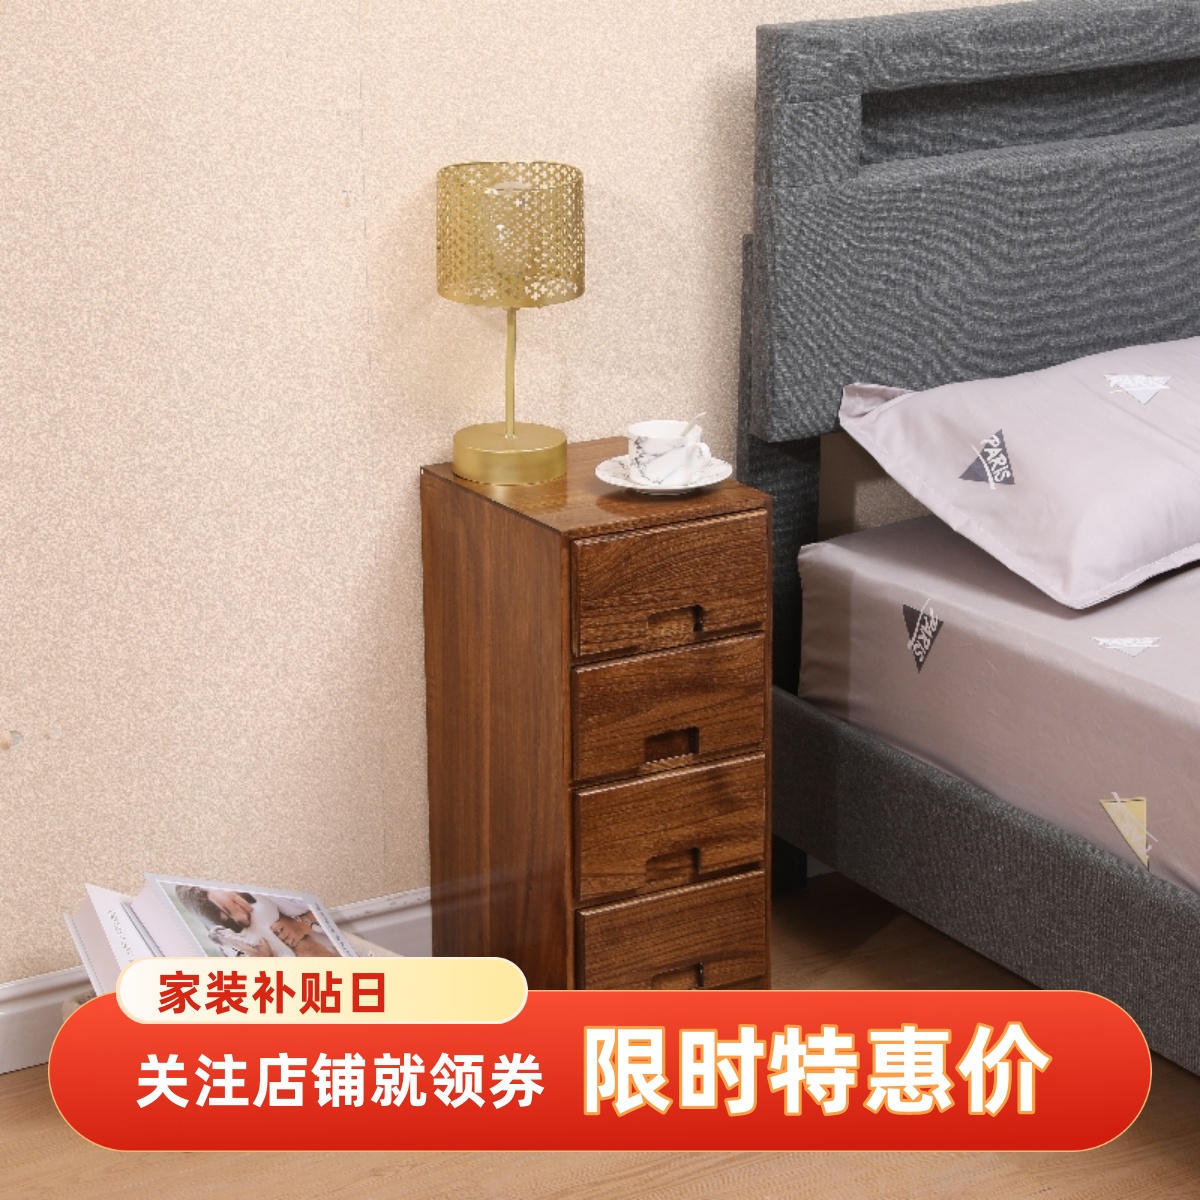 新中式全实木床头柜老桐木现代简约储物小柜卧室多层收纳床边柜子